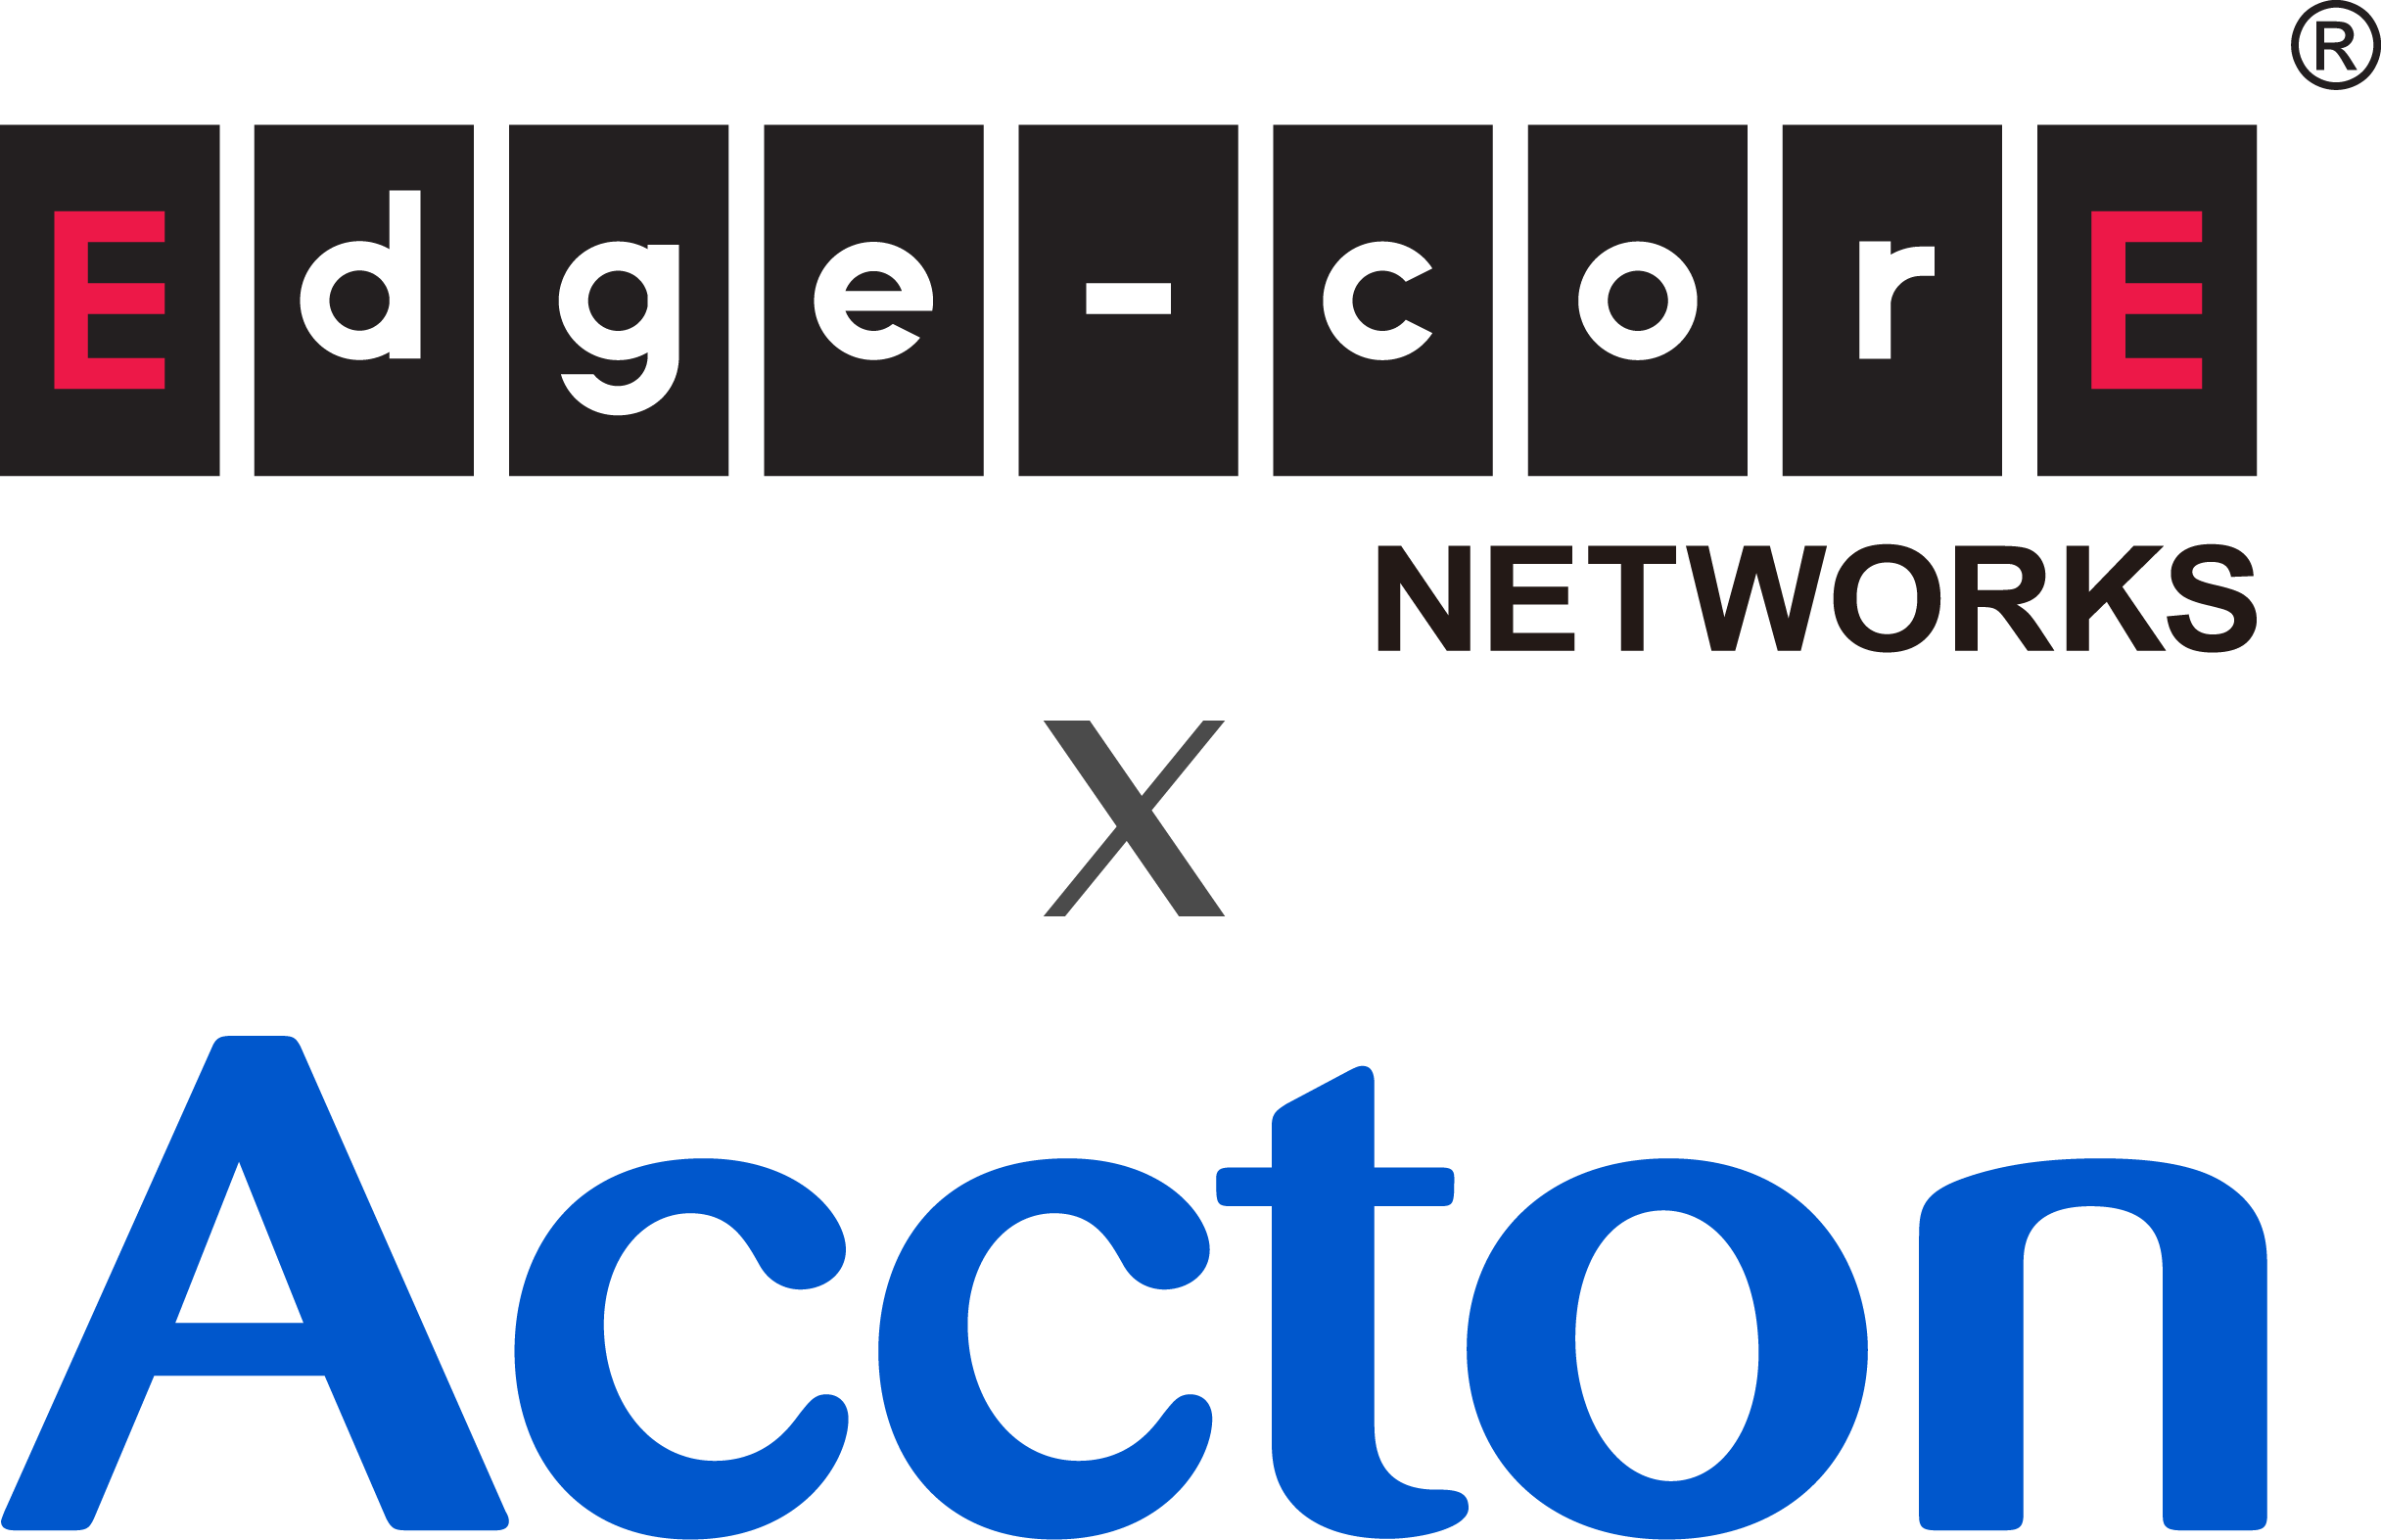 Edgecore Networks logo